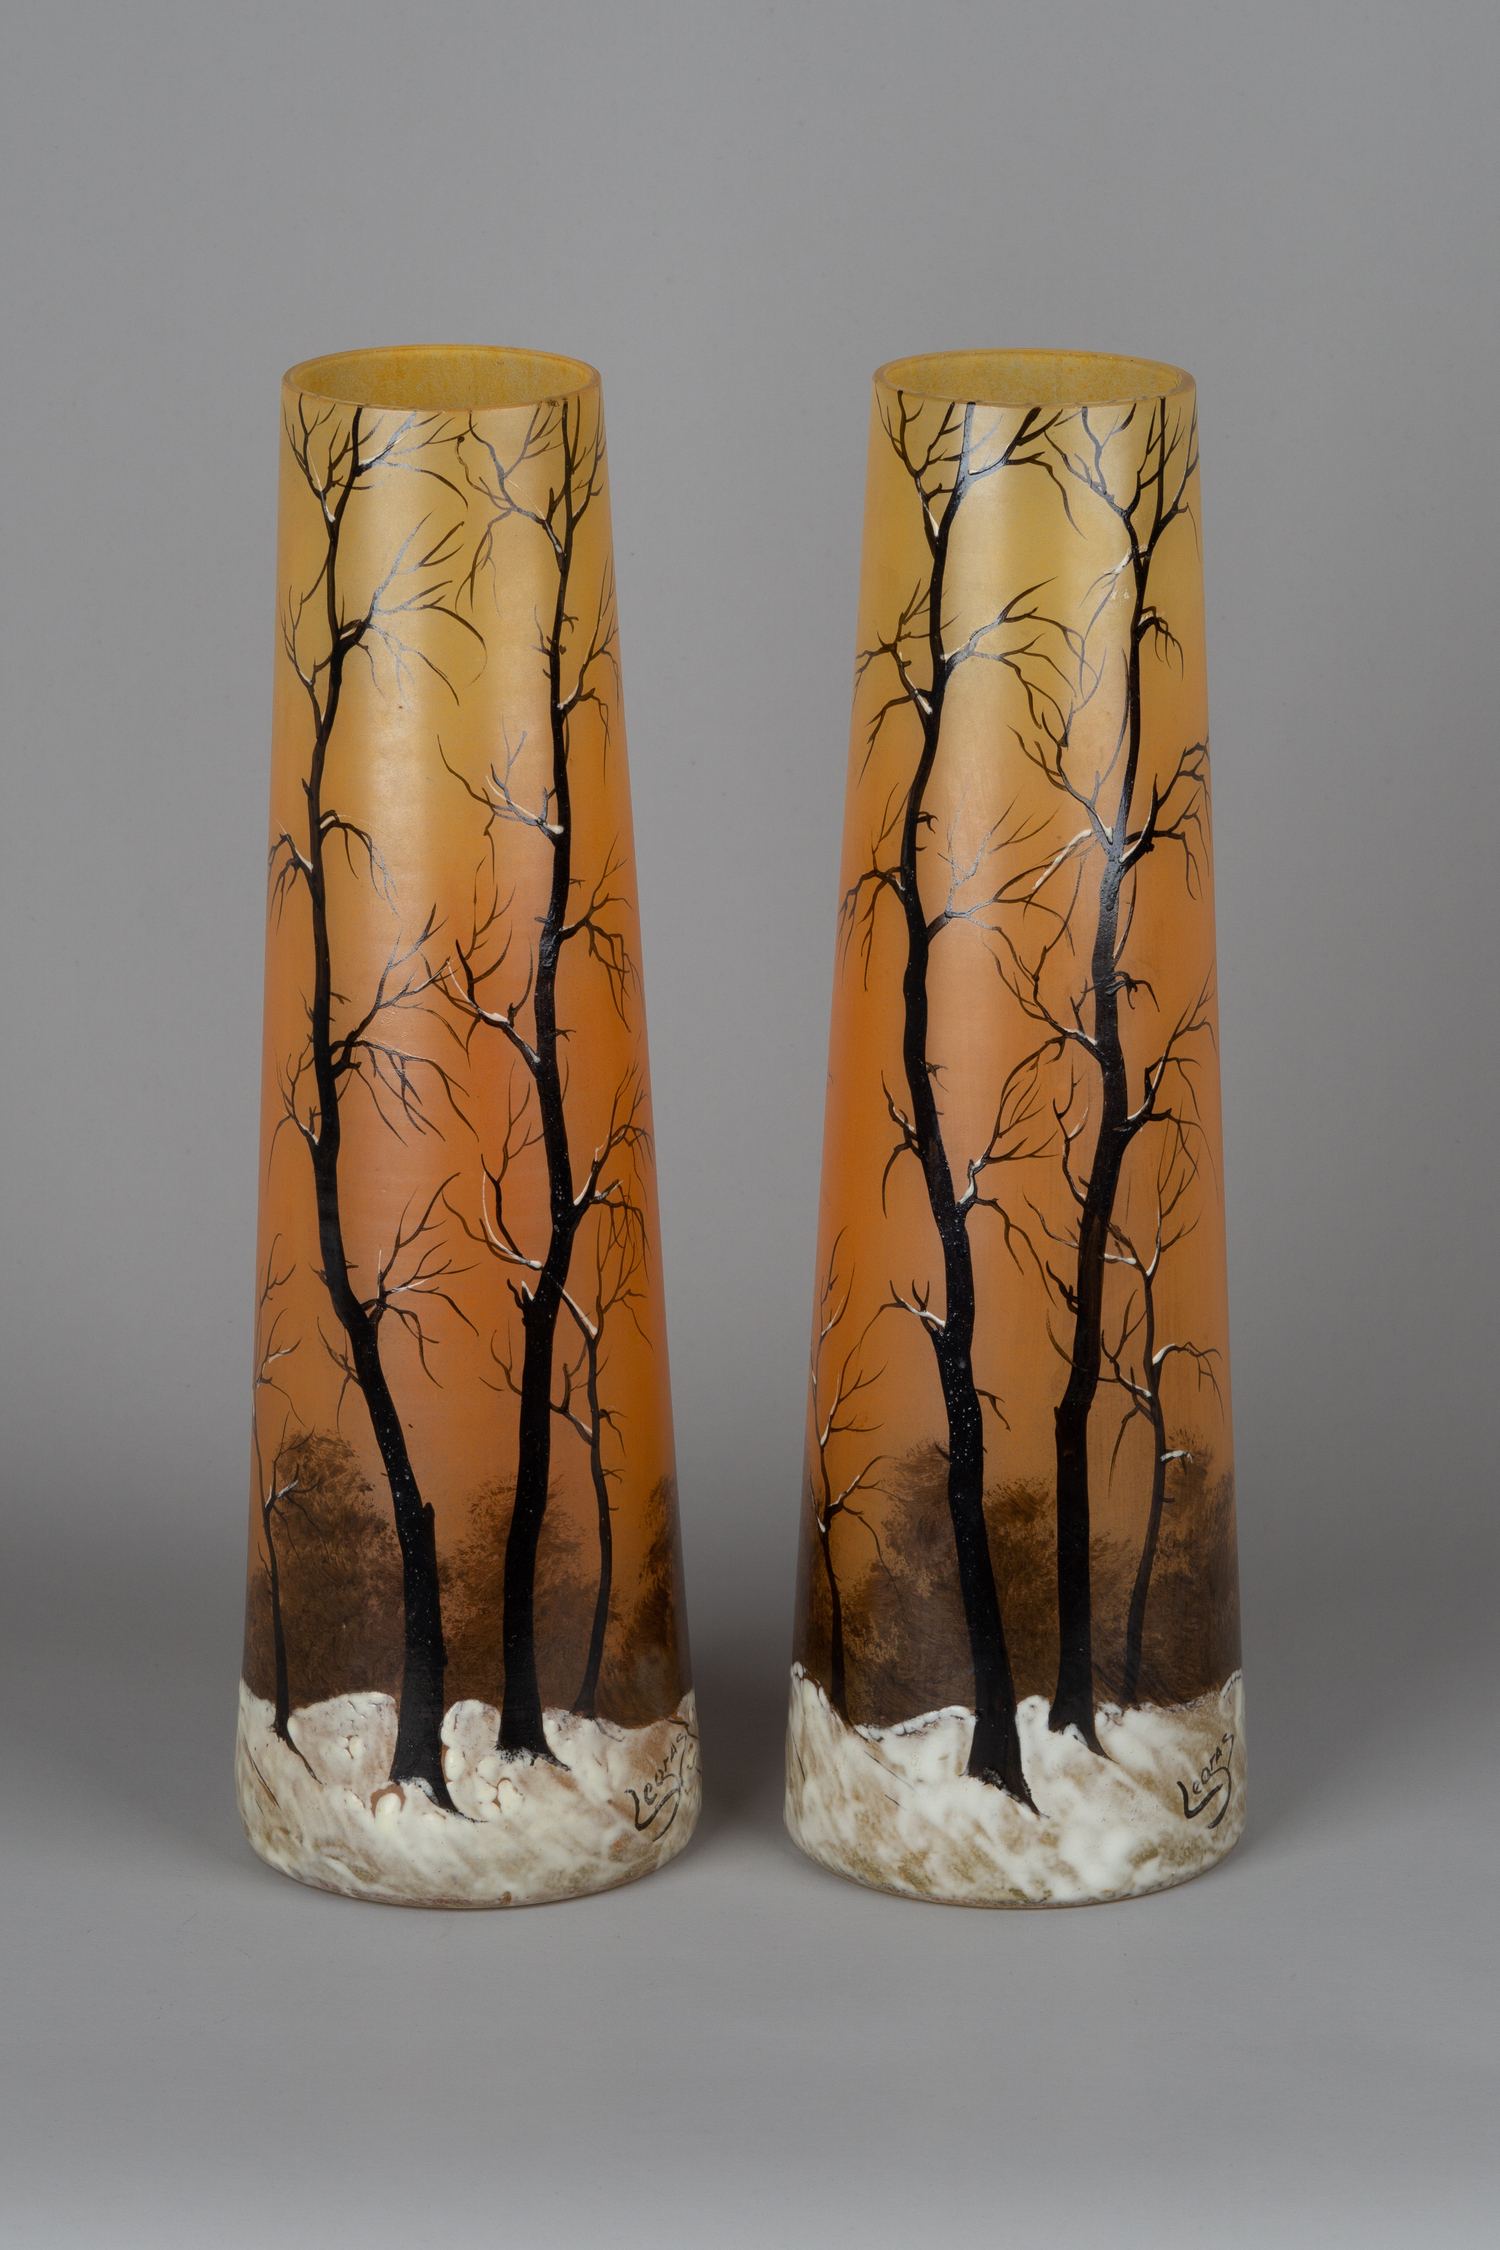 (Legras) Парные вазы с зимним пейзажем и деревьями.<br>Франция, фирма Legras, около 1900 г.